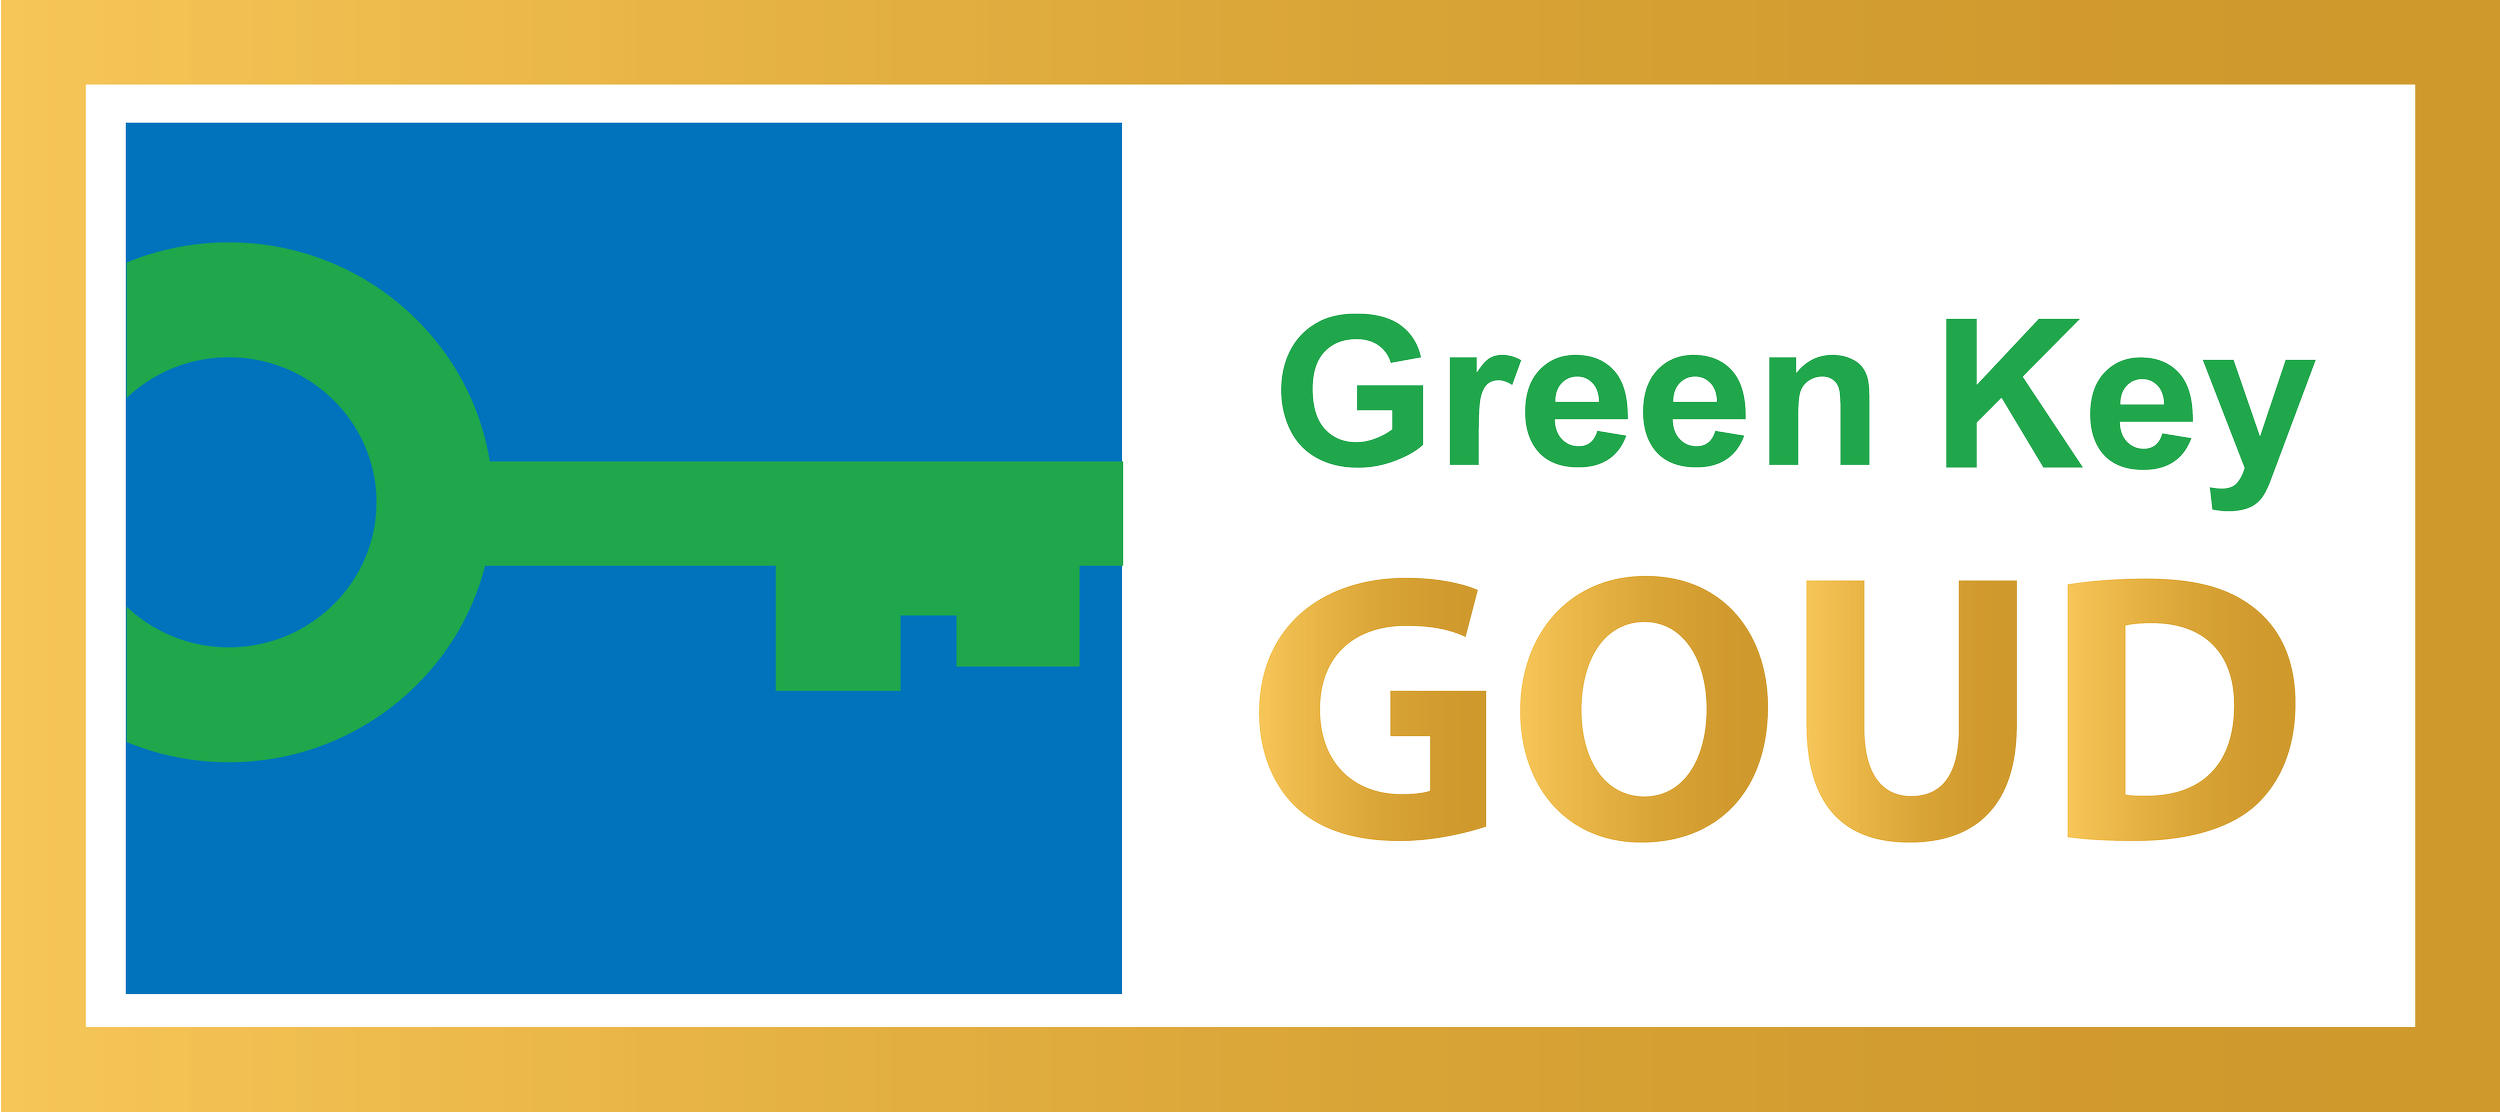 Seit 2018 sind wir im Besitz des Green Key Gold-Zertifikats